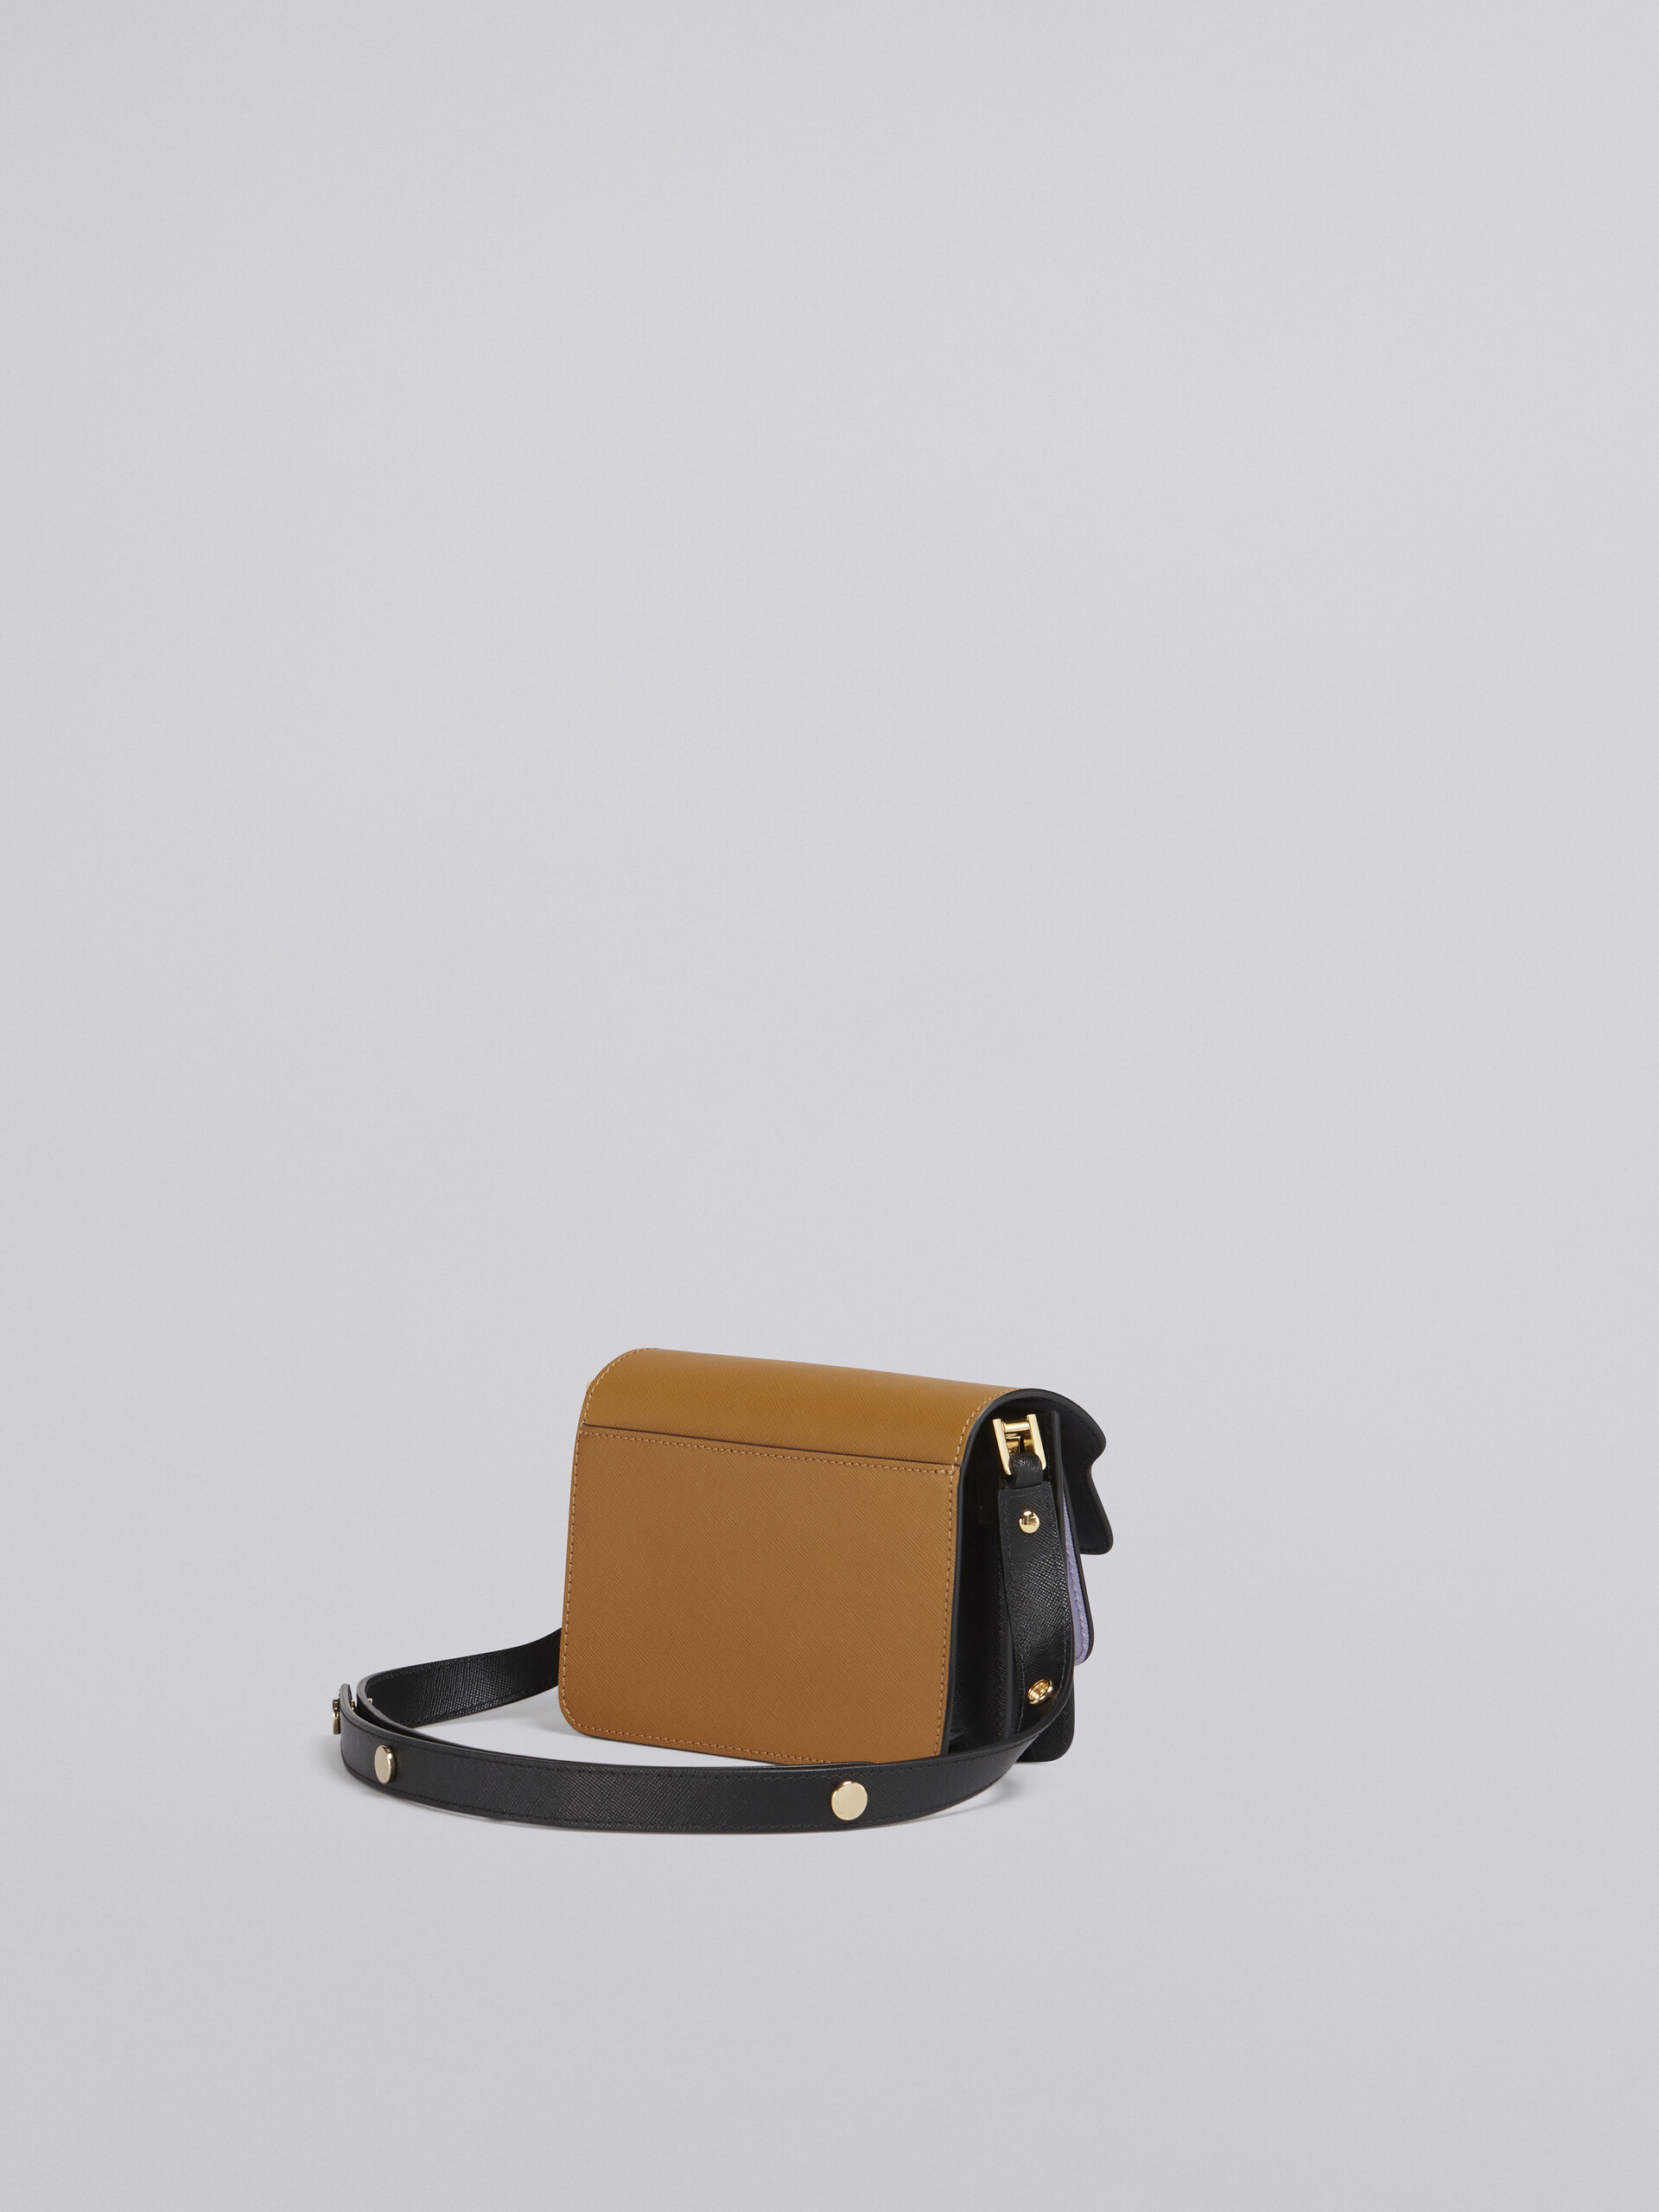 TRUNK bag mini in saffiano marrone lilla e nero - Borse a spalla - Image 3